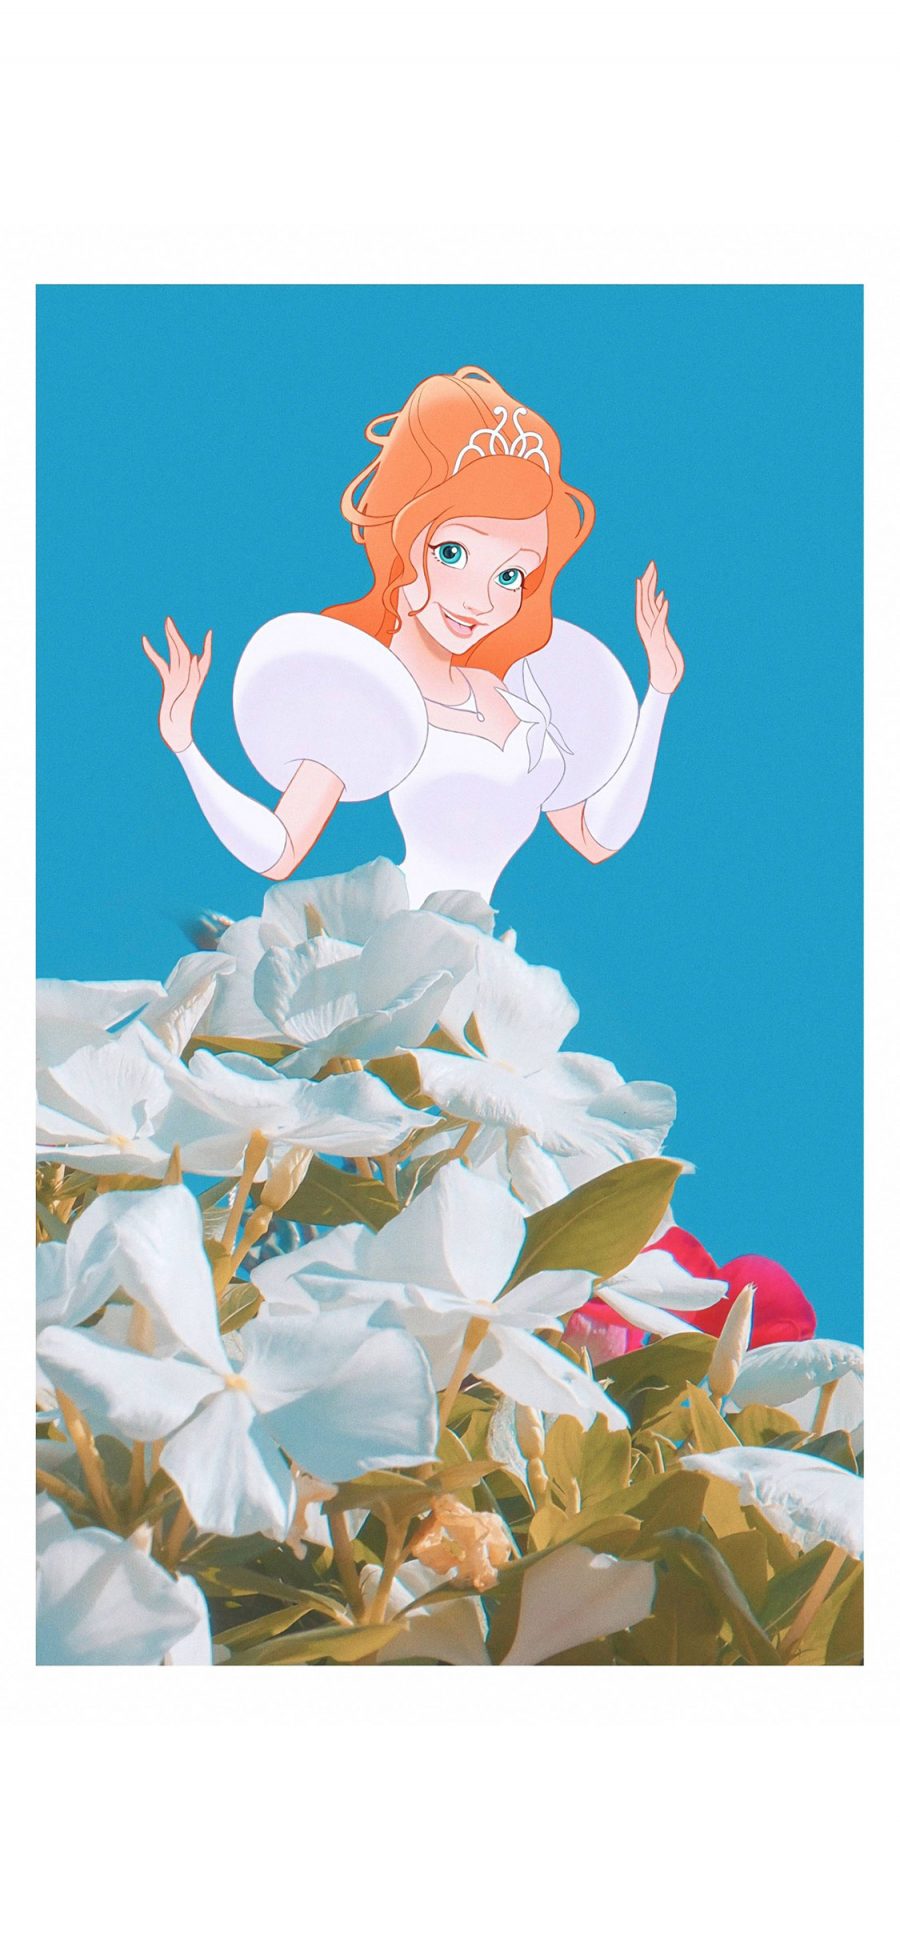 [2436×1125]迪士尼 公主 鲜花 裙子 创意 苹果手机动漫壁纸图片